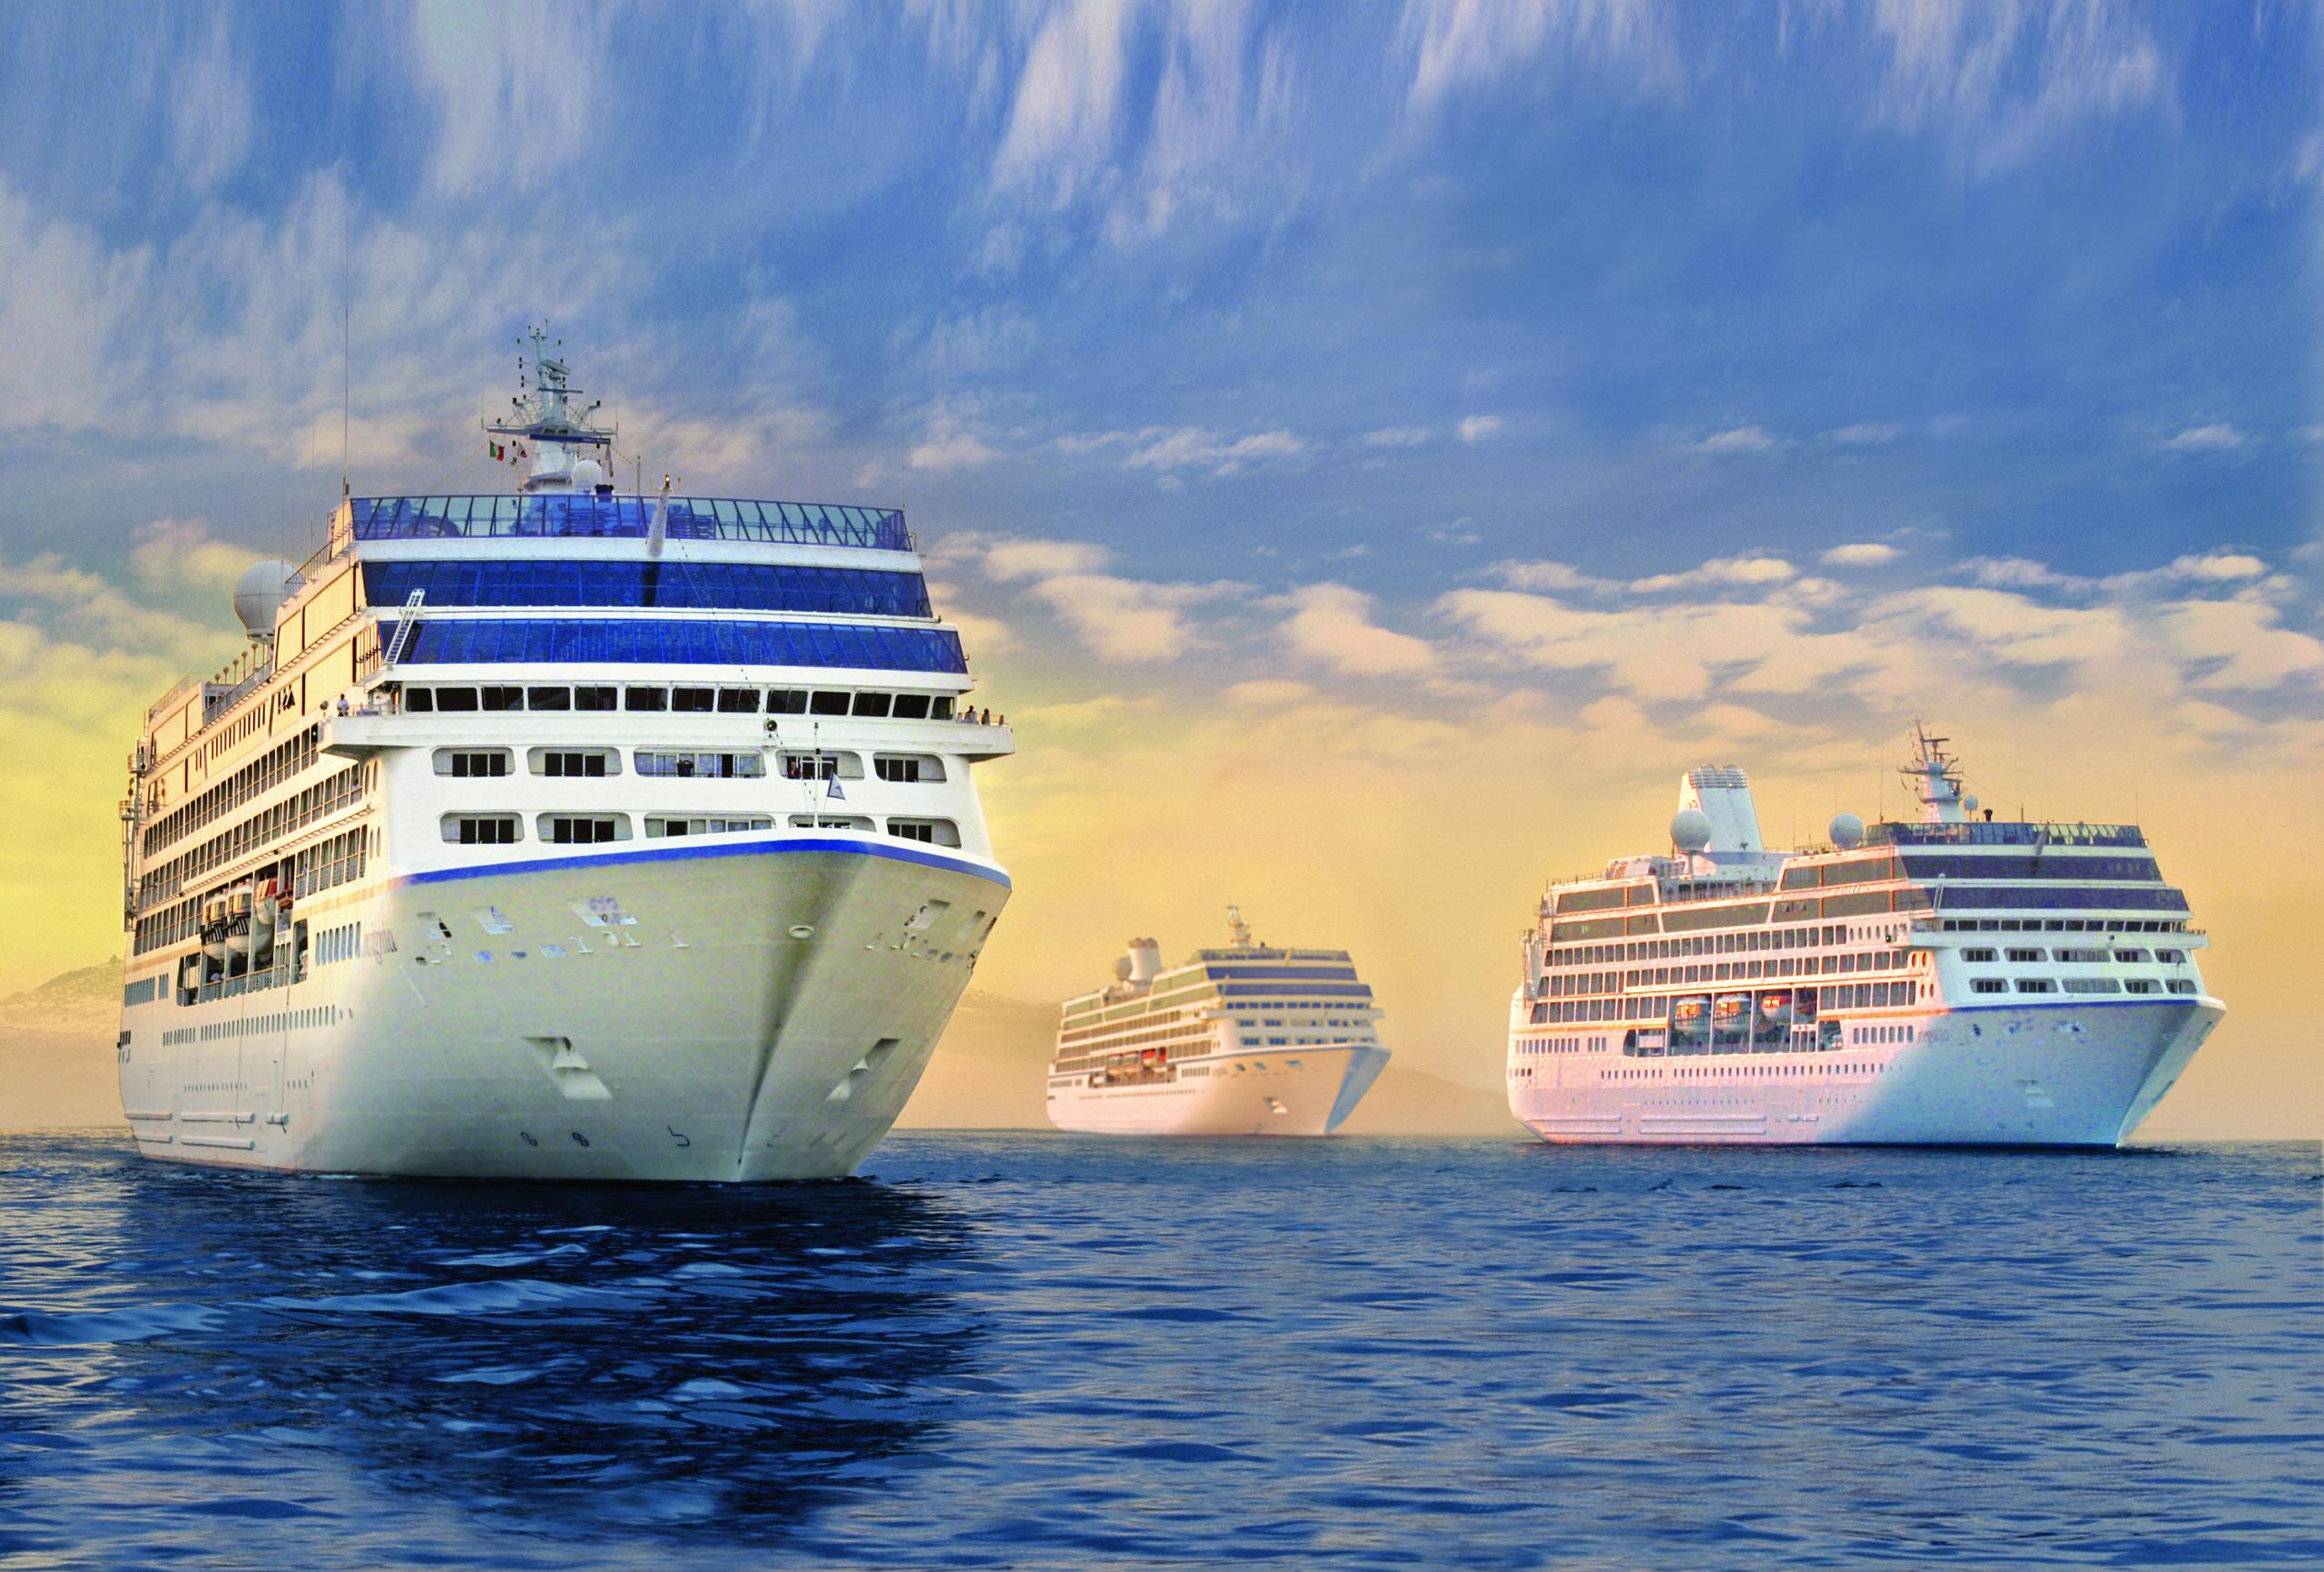 oceania cruise hours